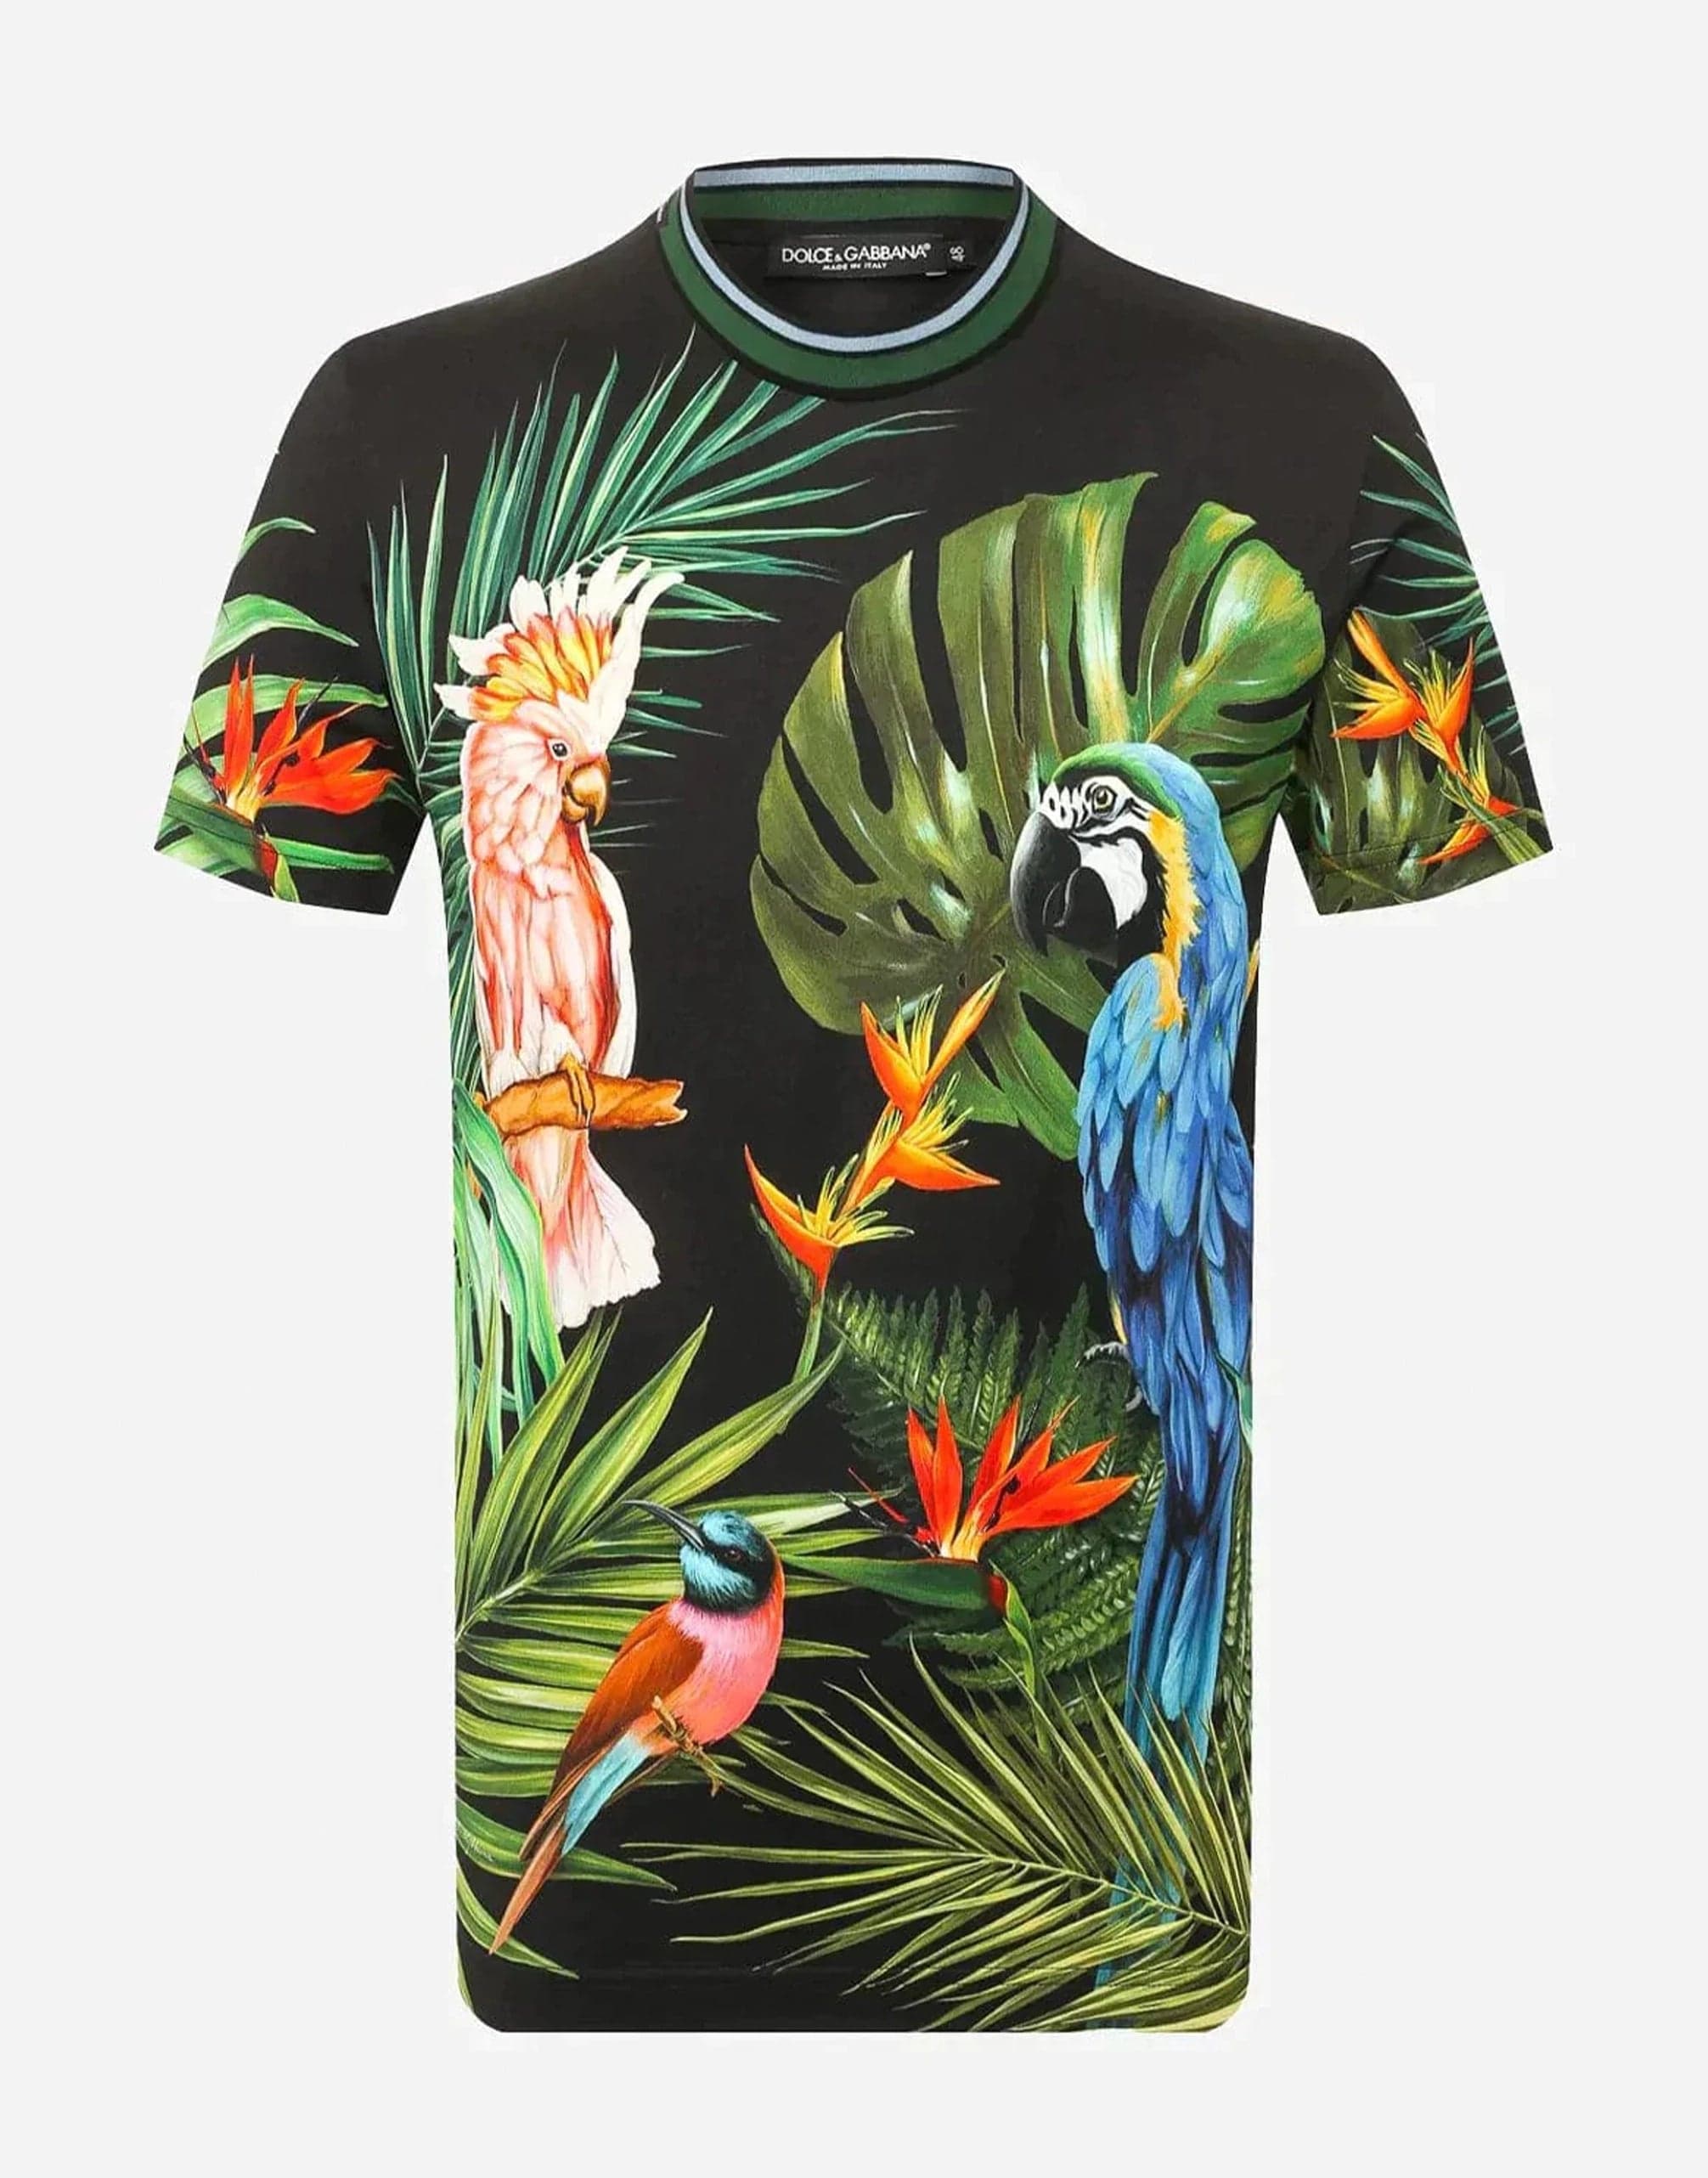 Dolce & Gabbana Parrot Print T-Shirt